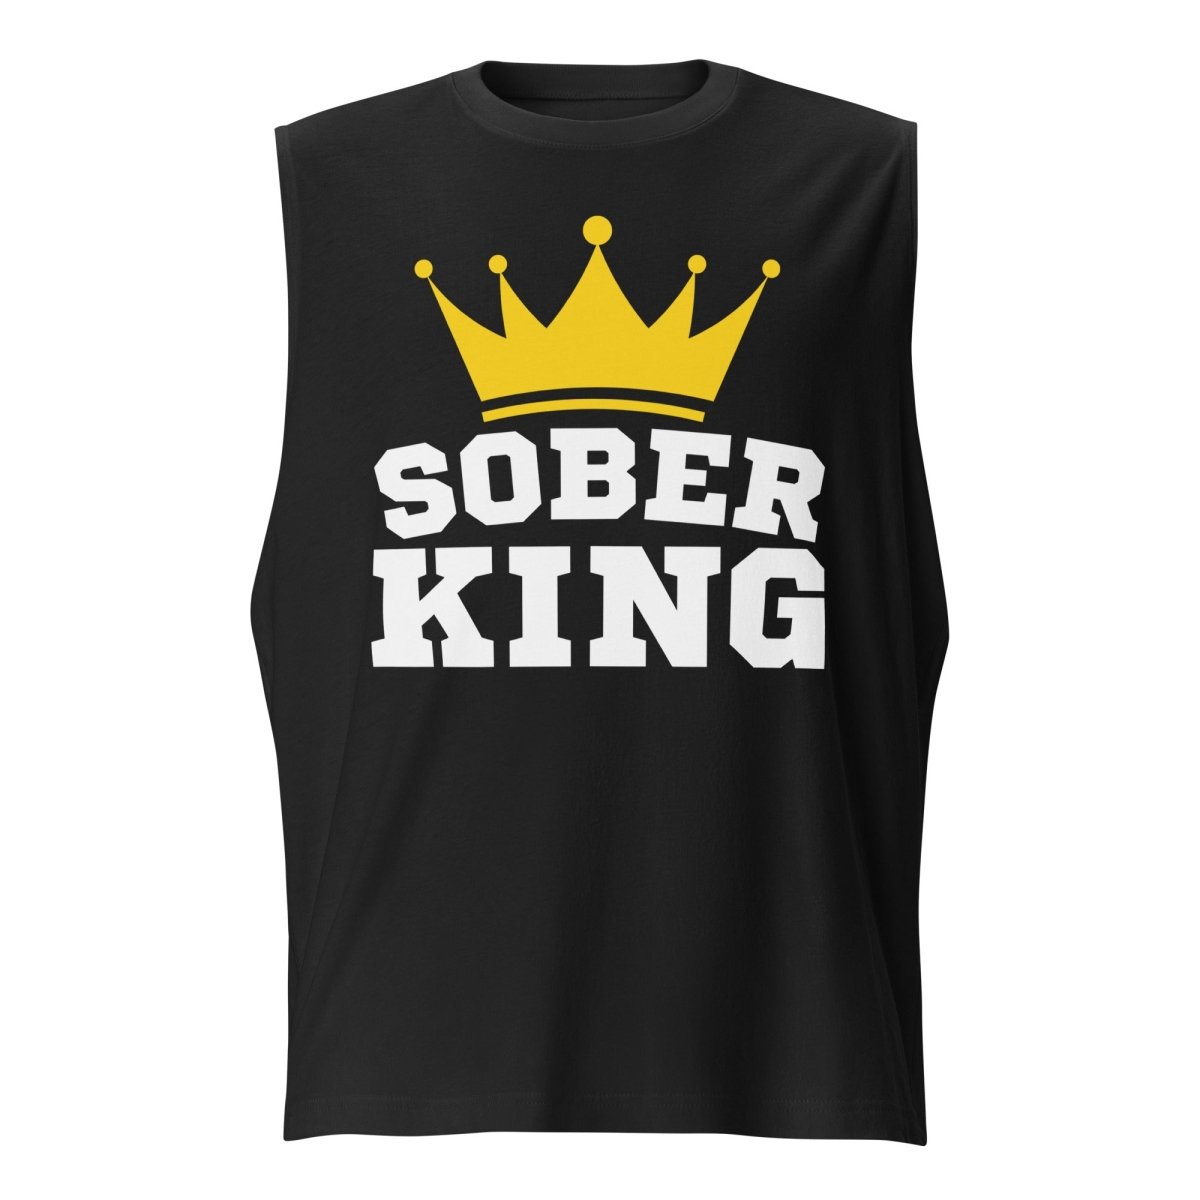 Sober King Majesty Muscle Shirt for Men - Sobervation